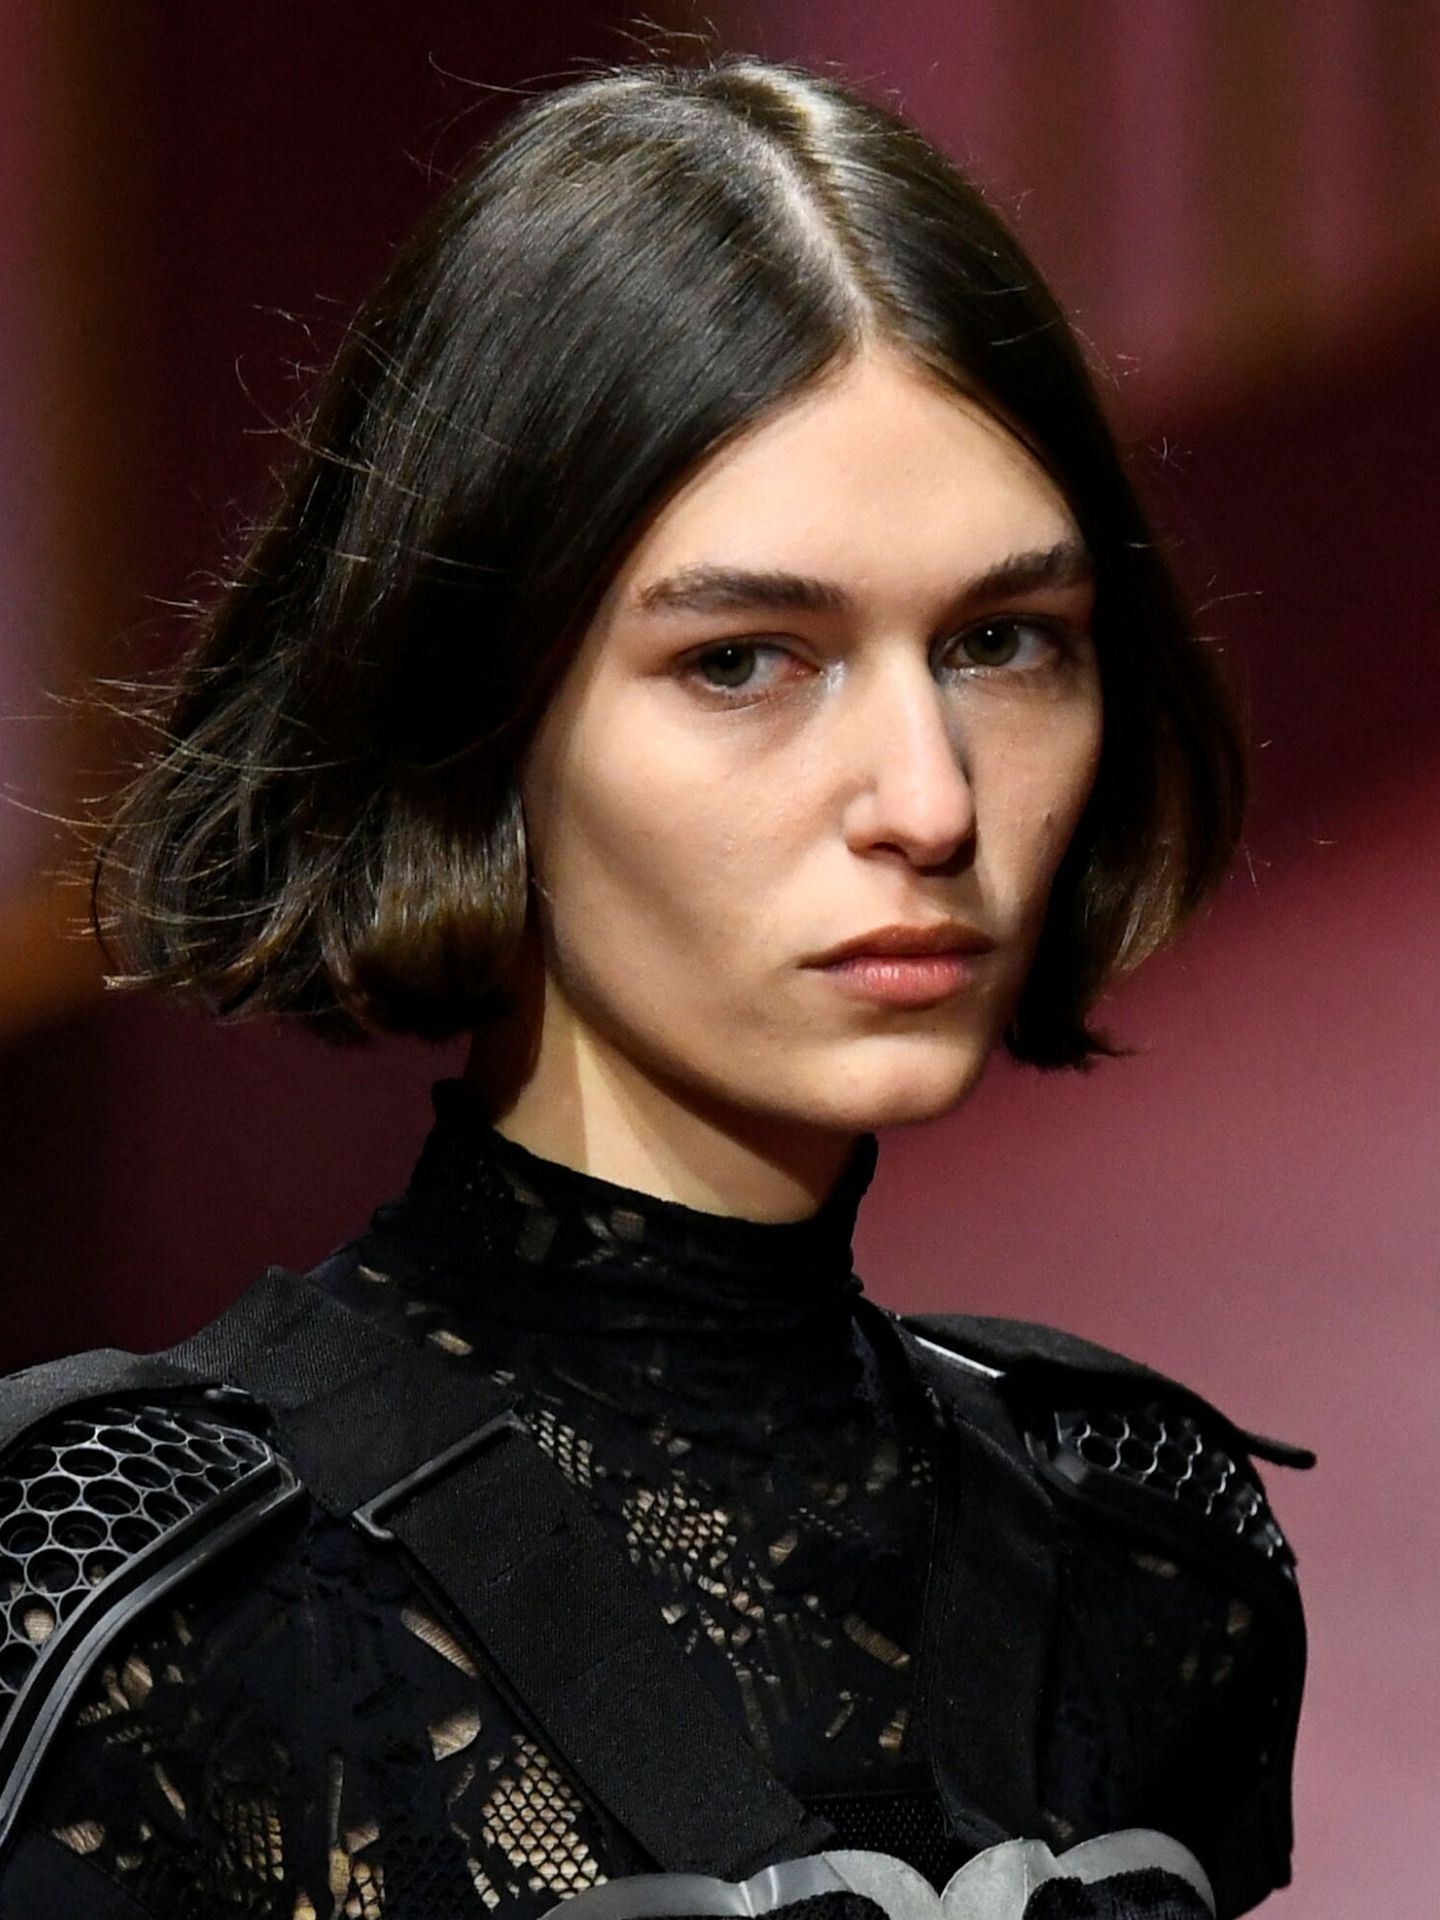 Al iluminar el lagrimal, el maquillaje de Dior lograba abrir la mirada de una forma sutil y elegante. (Reuters/Piroschka van de Wouw)